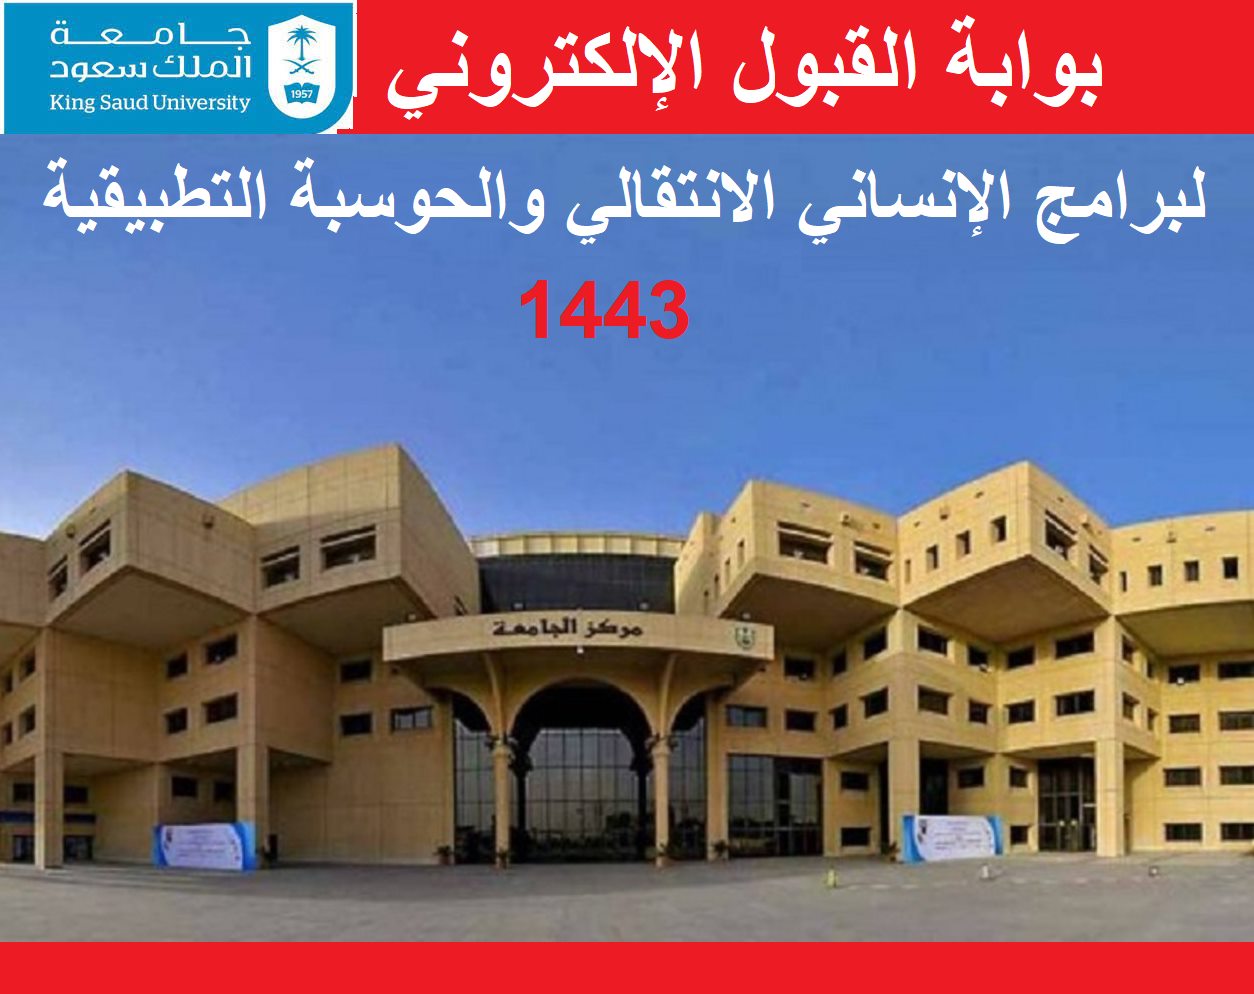 بوابة القبول الإلكتروني لبرامج الإنساني الانتقالي والحوسبة التطبيقية تقديم جامعة الملك سعود darpg.ksu.edu.sa